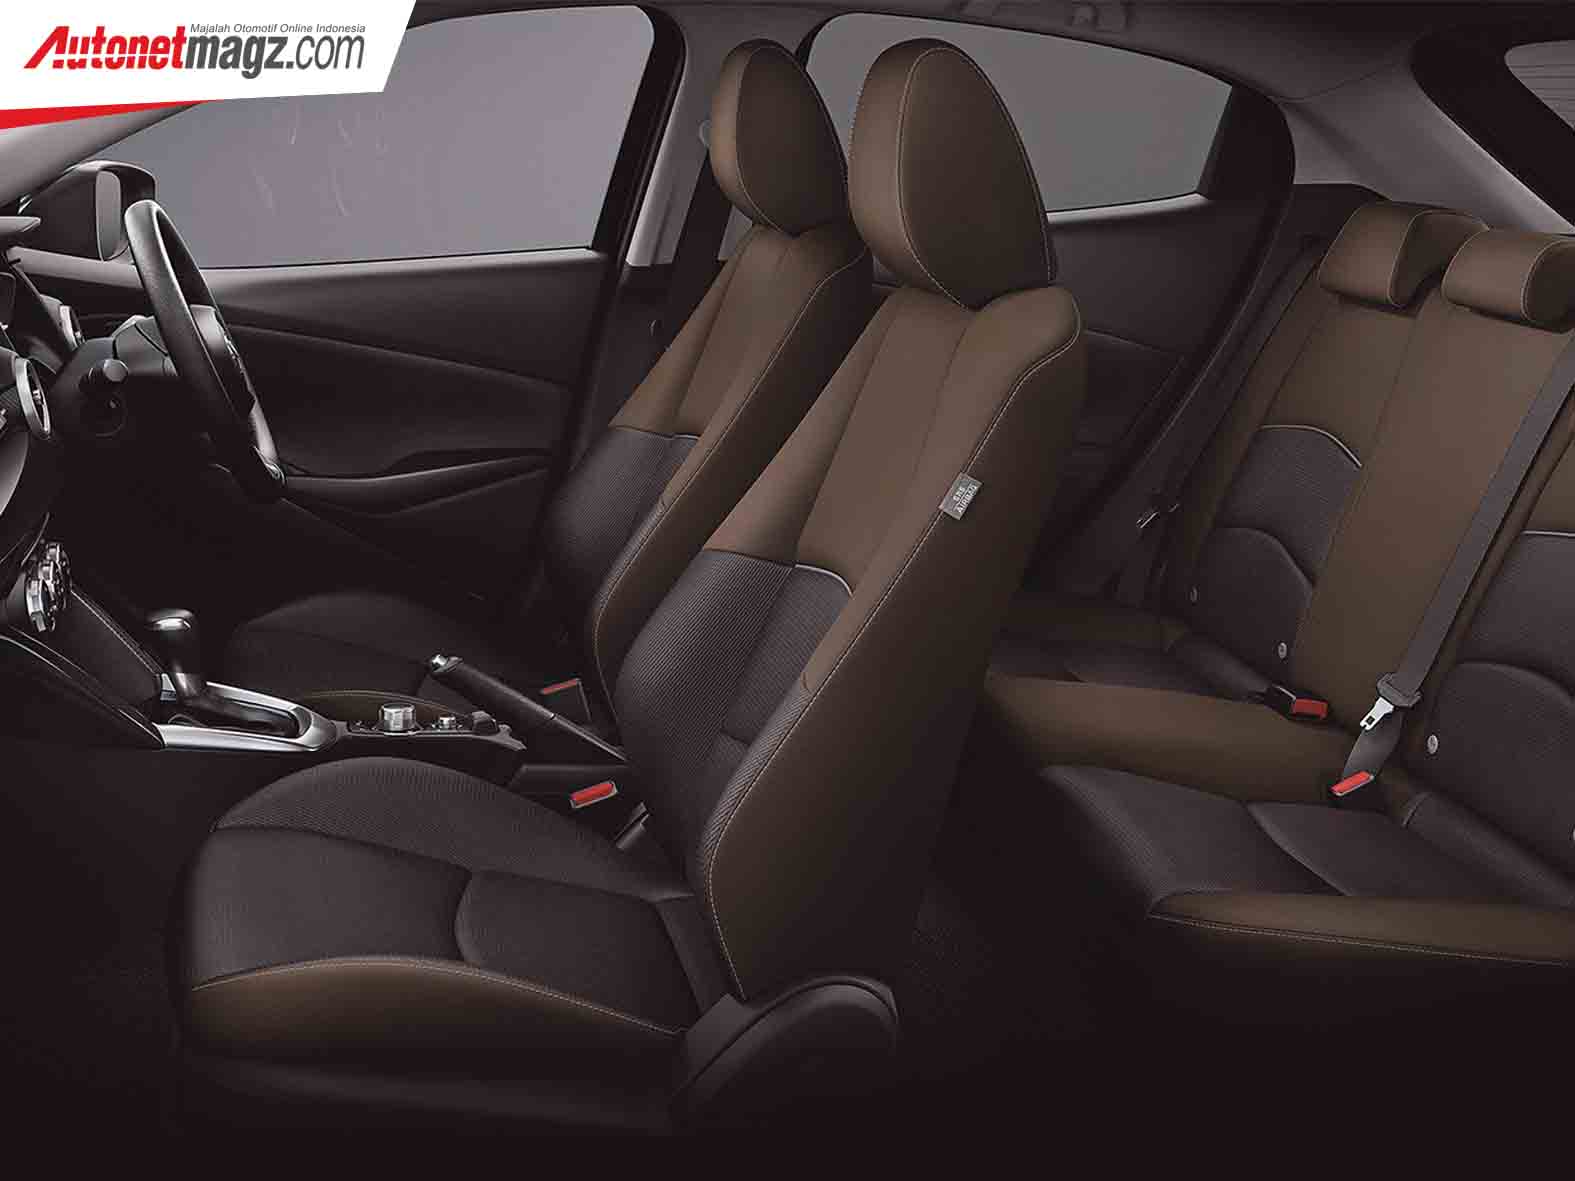 Berita, Kabin Mazda2 Facelift: Mazda2 Facelift : Pakai Desain Kodo 2.0 & Tambah Fitur!